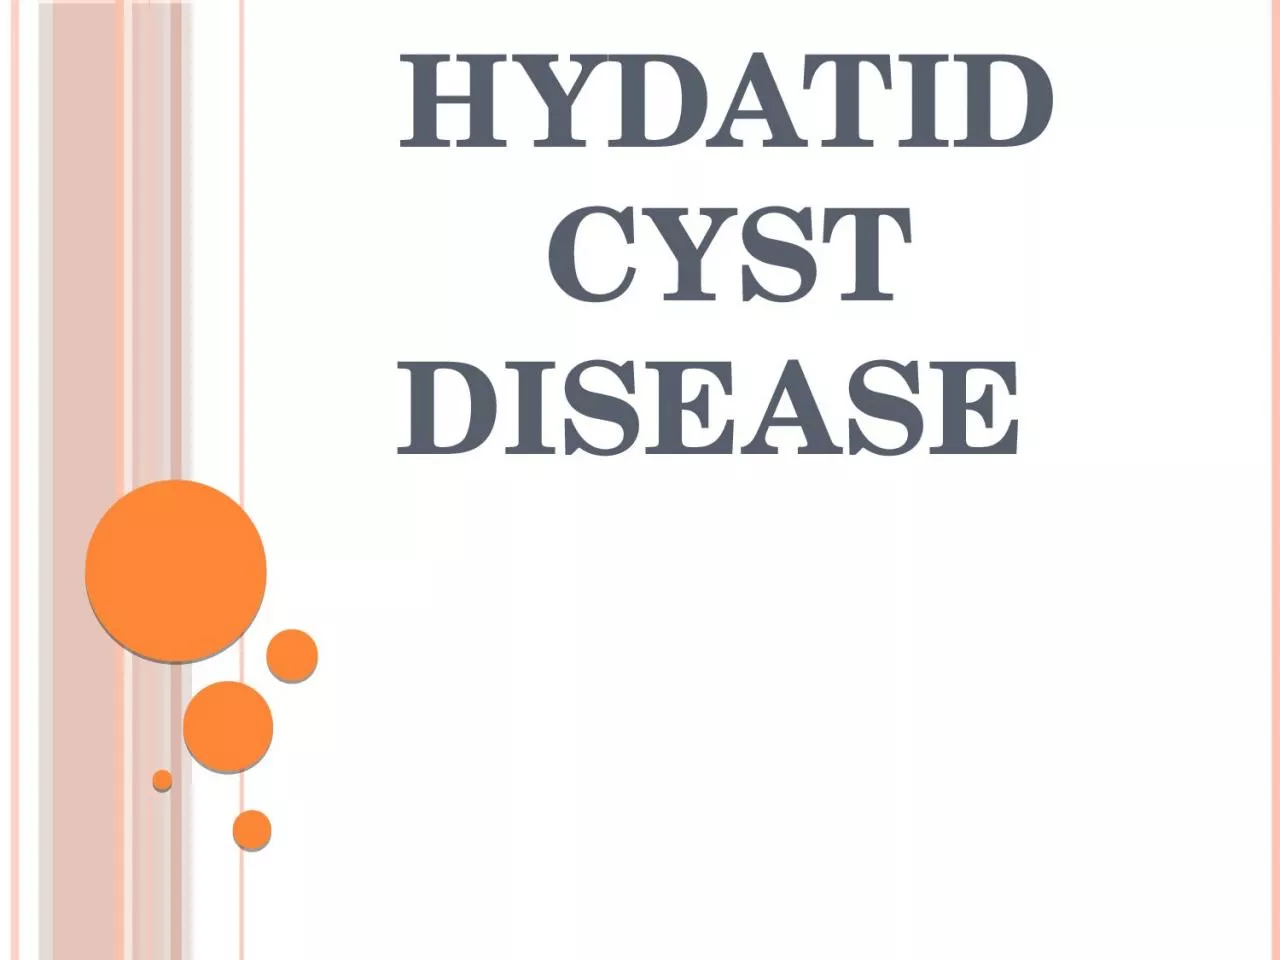 Hydatid cyst disease  Introduction